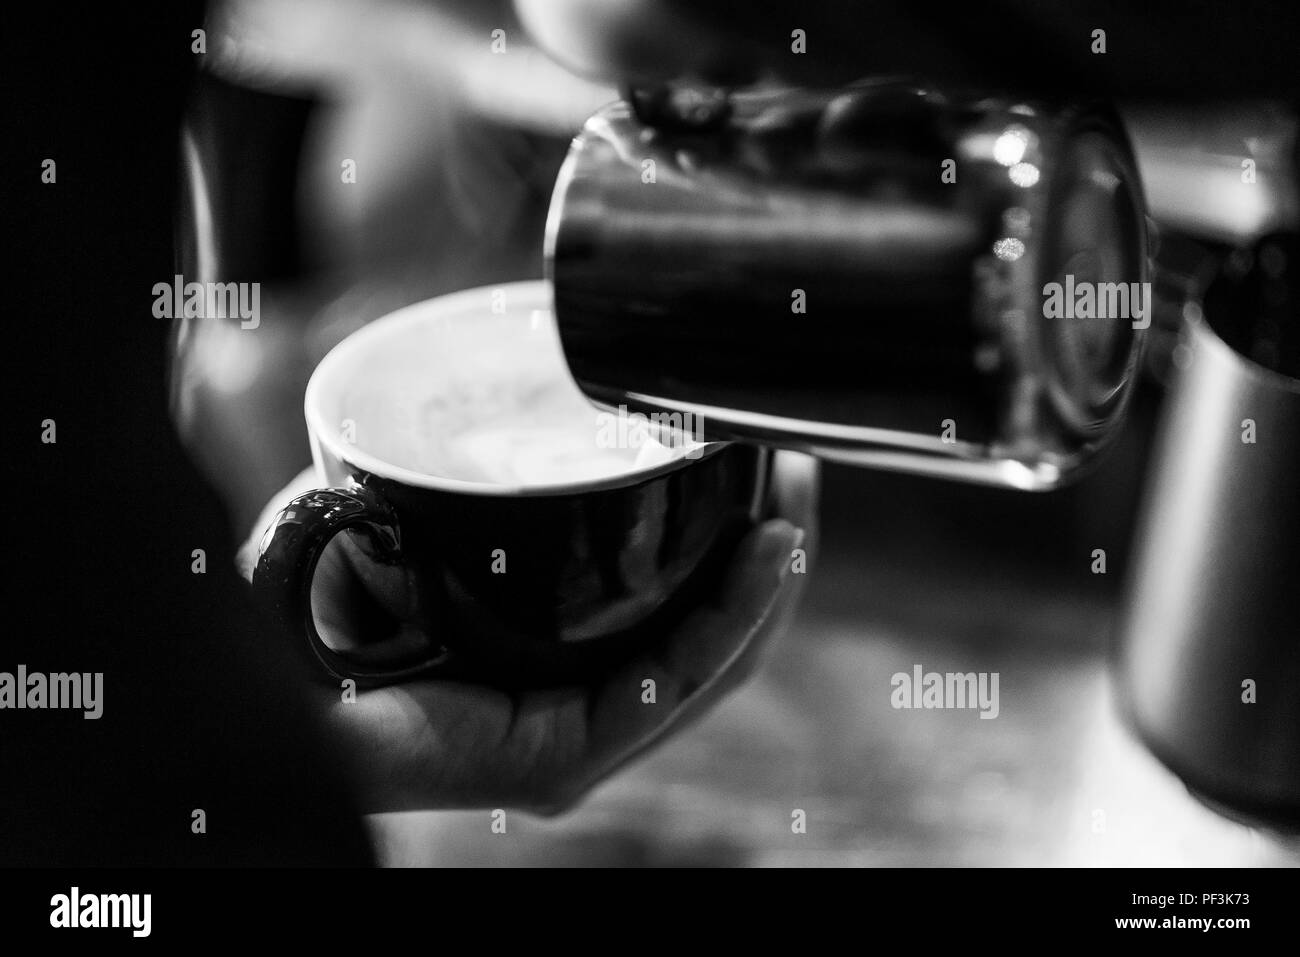 La preparazione di caffè espresso BW in bianco e nero close up dettaglio con caffetteria moderna macchina e bicchieri Foto Stock